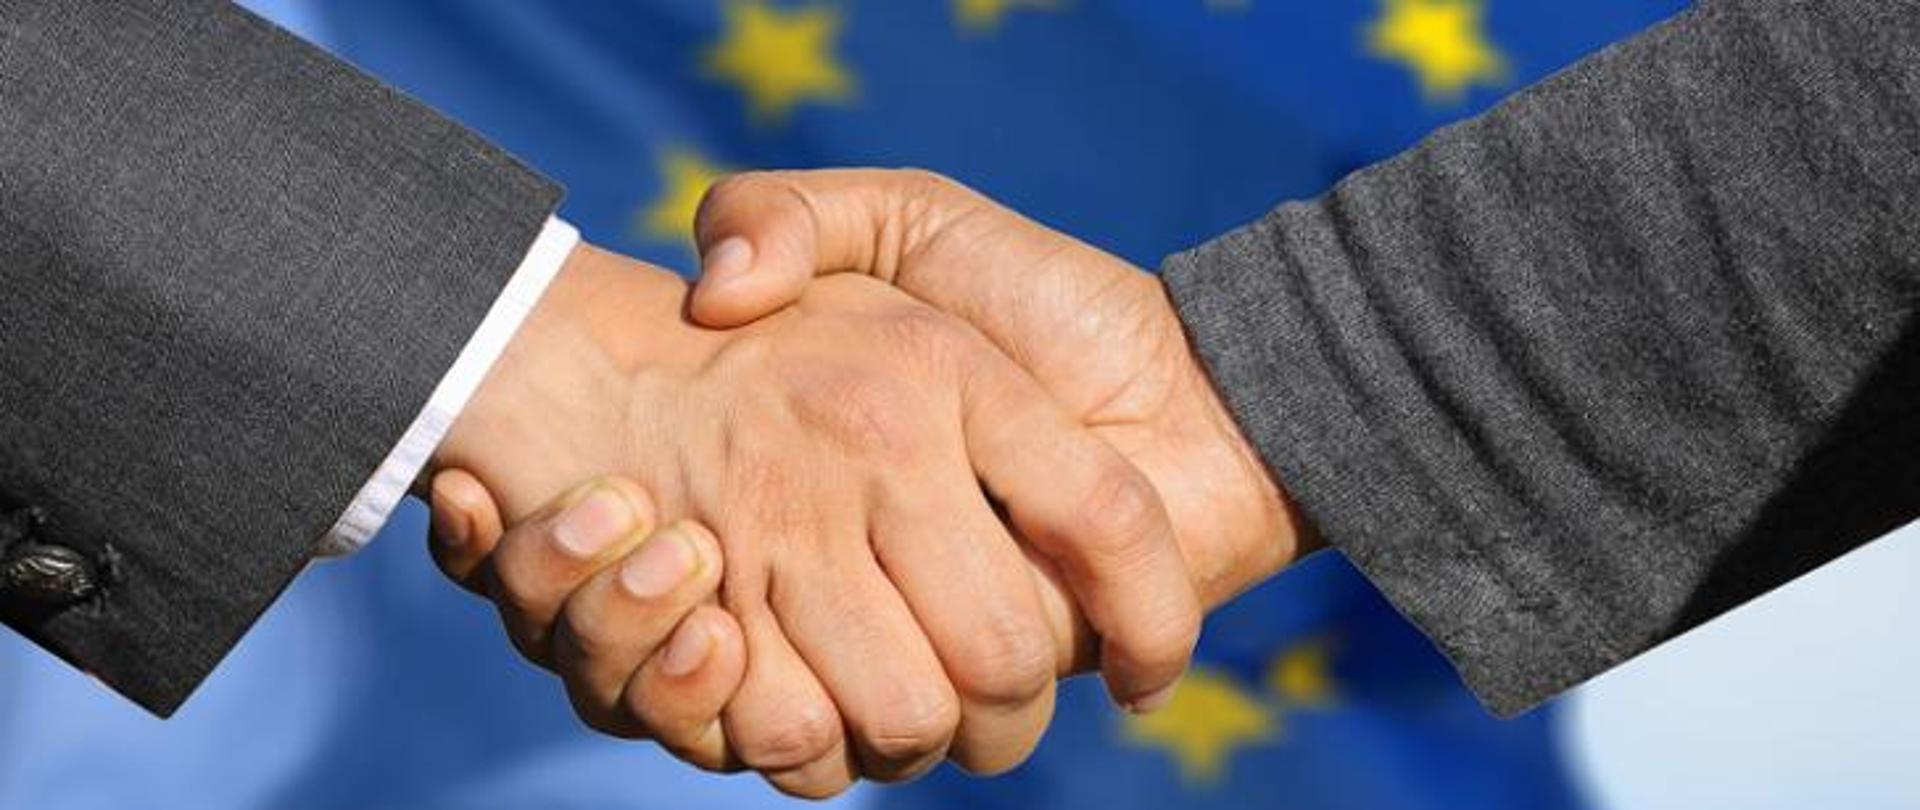 Dwie uściśnięte męskie dłonie na tle unijnej flagi.